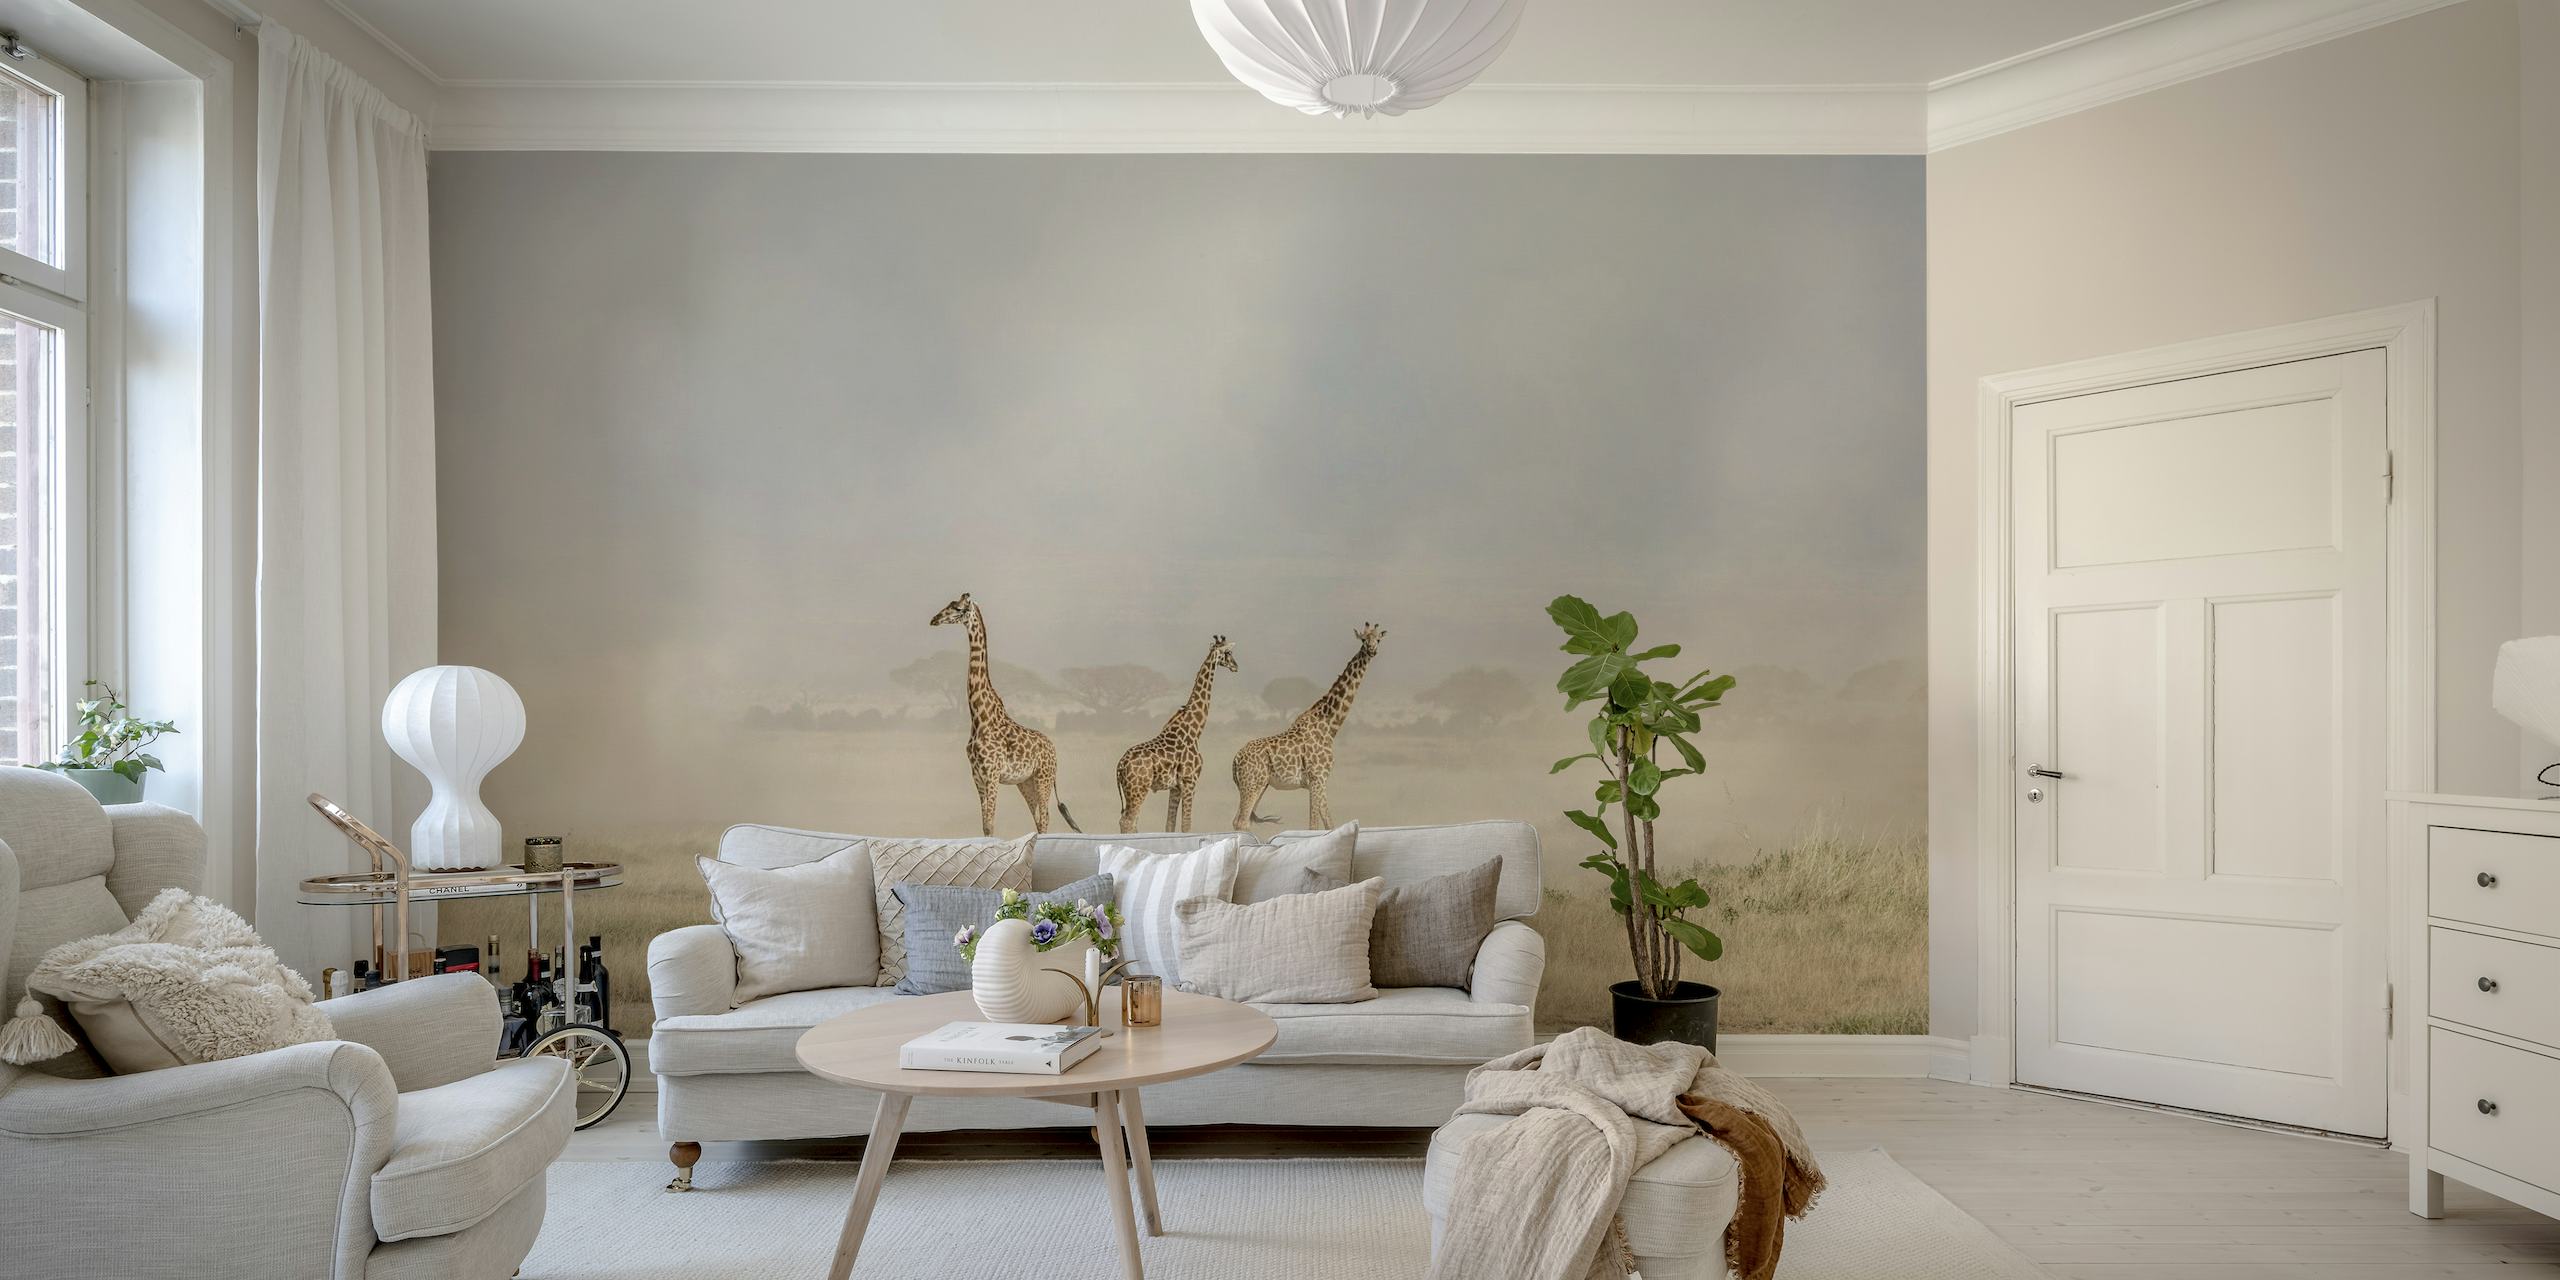 Une fresque murale représentant des girafes dans le paysage poussiéreux d'Amboseli avec des diables de poussière en arrière-plan.